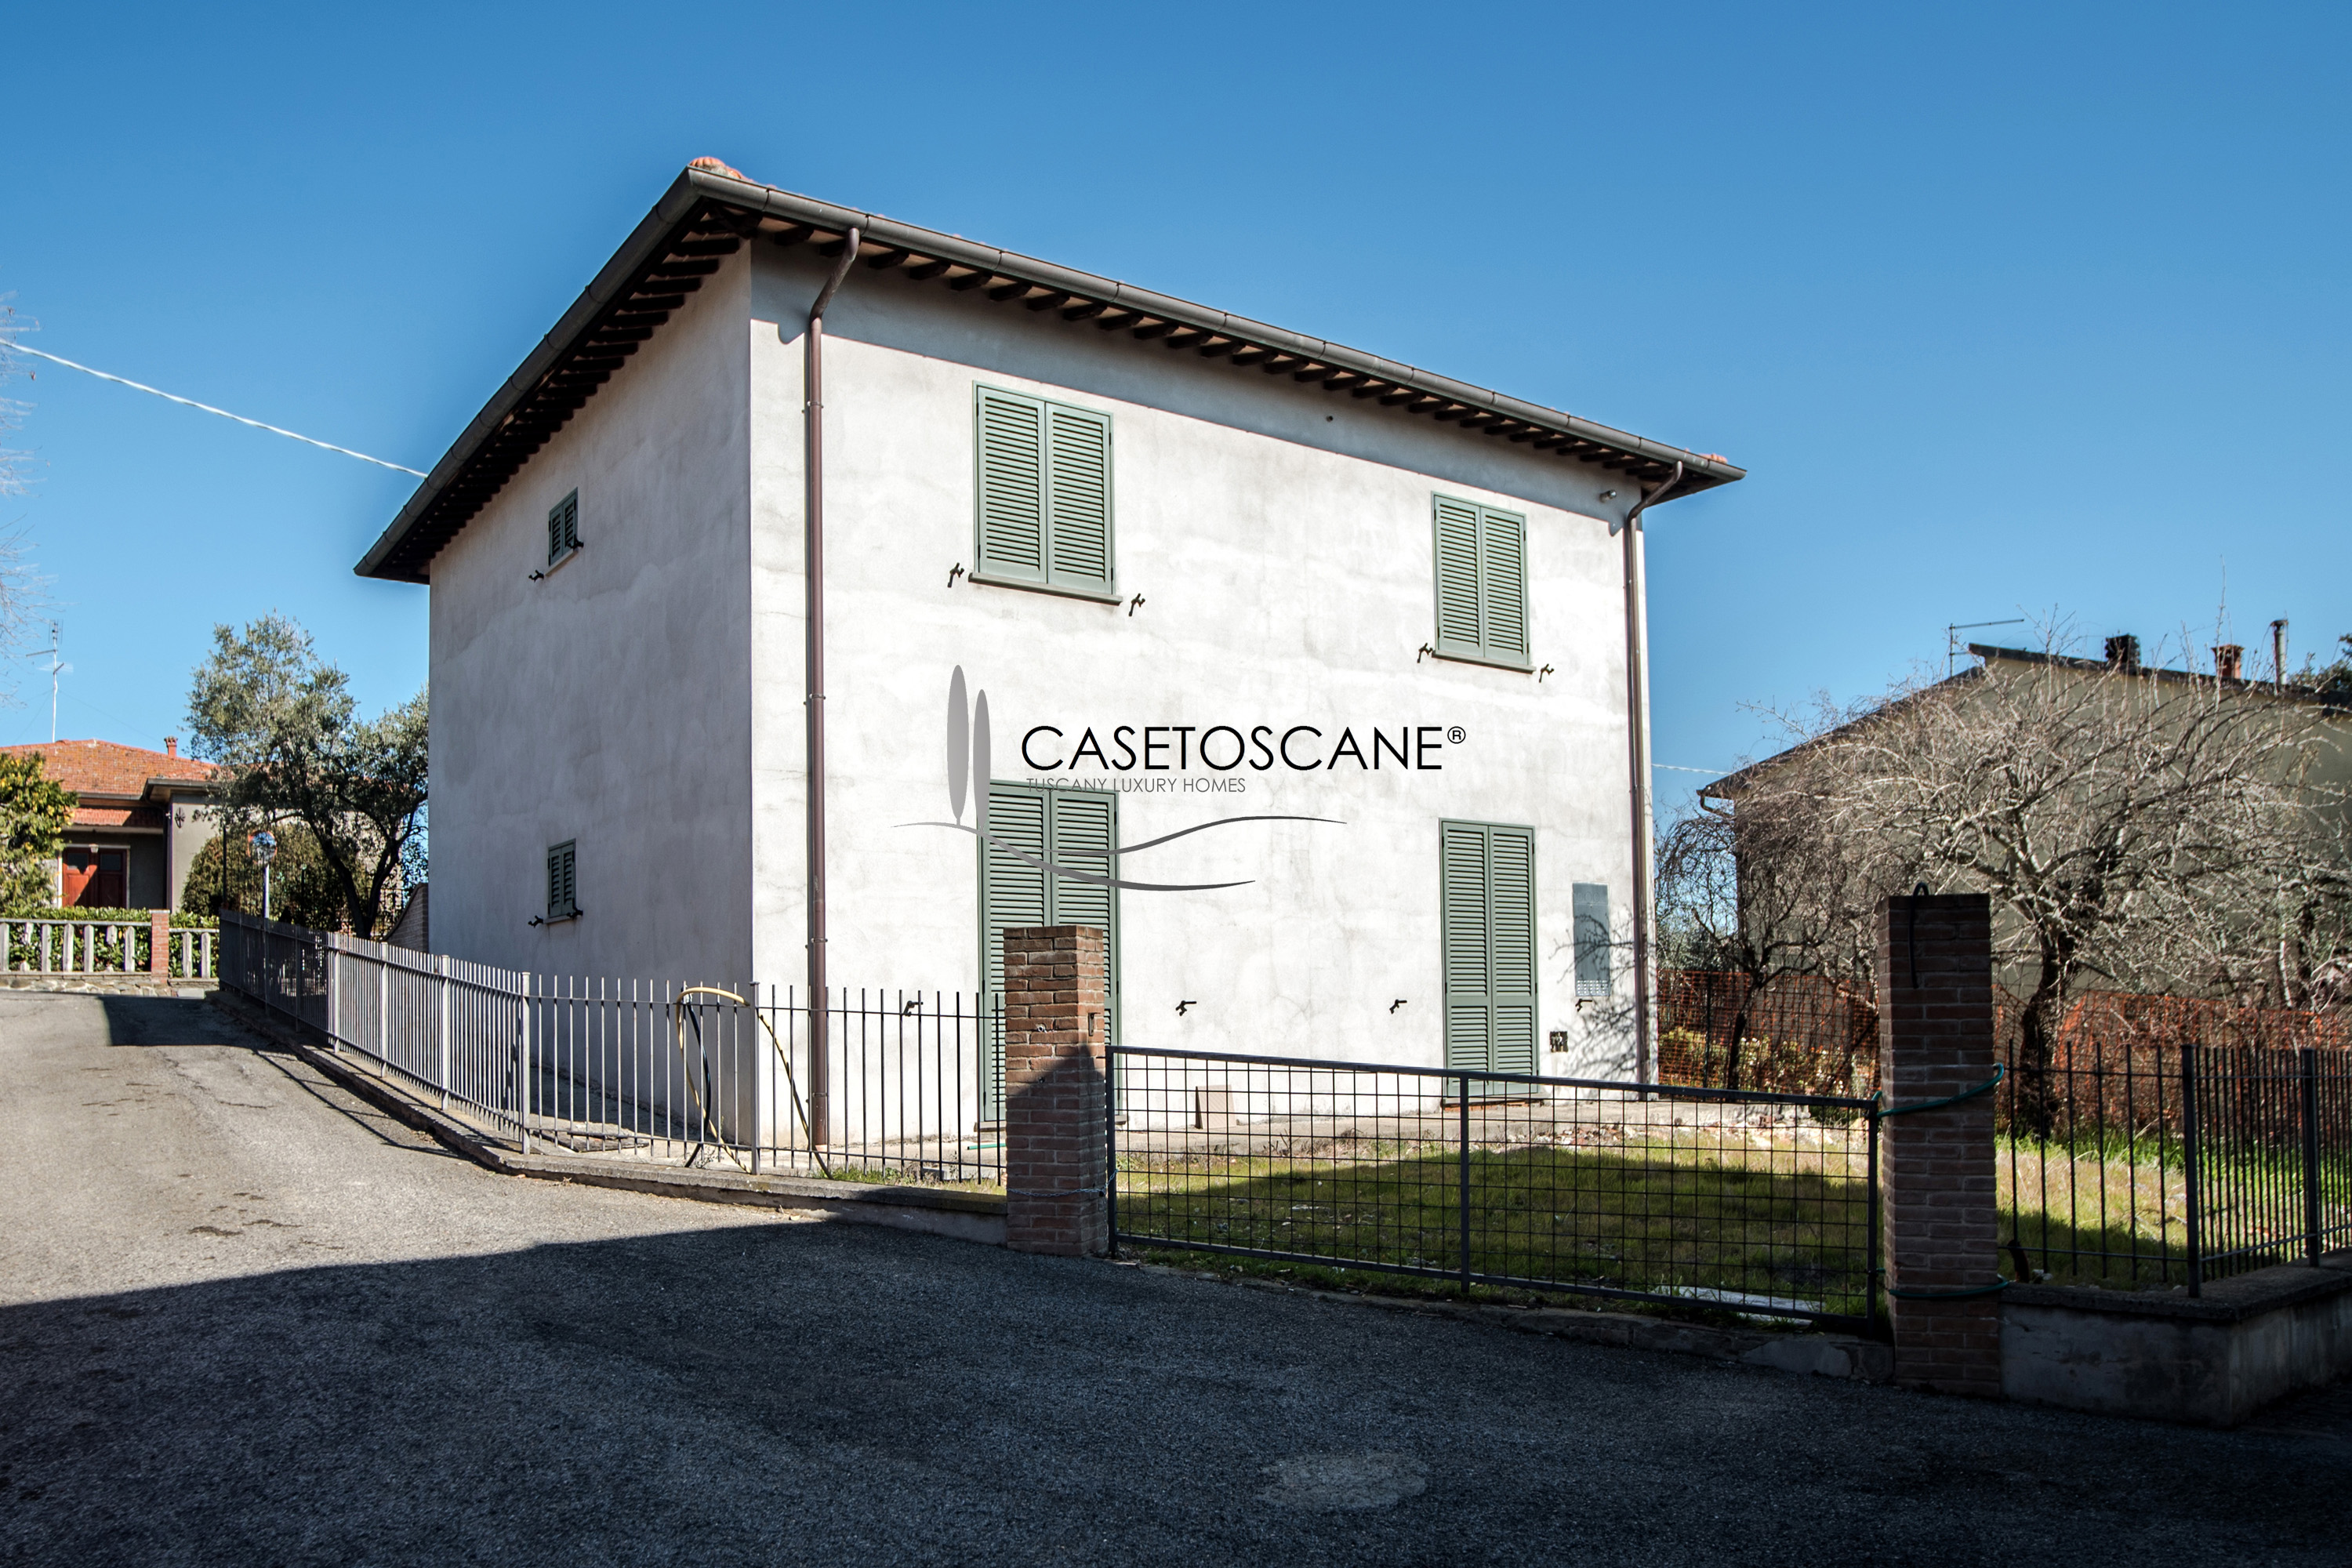 3094 - Villetta singola di nuova costruzione di mq.140 con giardino di mq.270 e garage a due passi dal centro storico di Lucignano (AR).